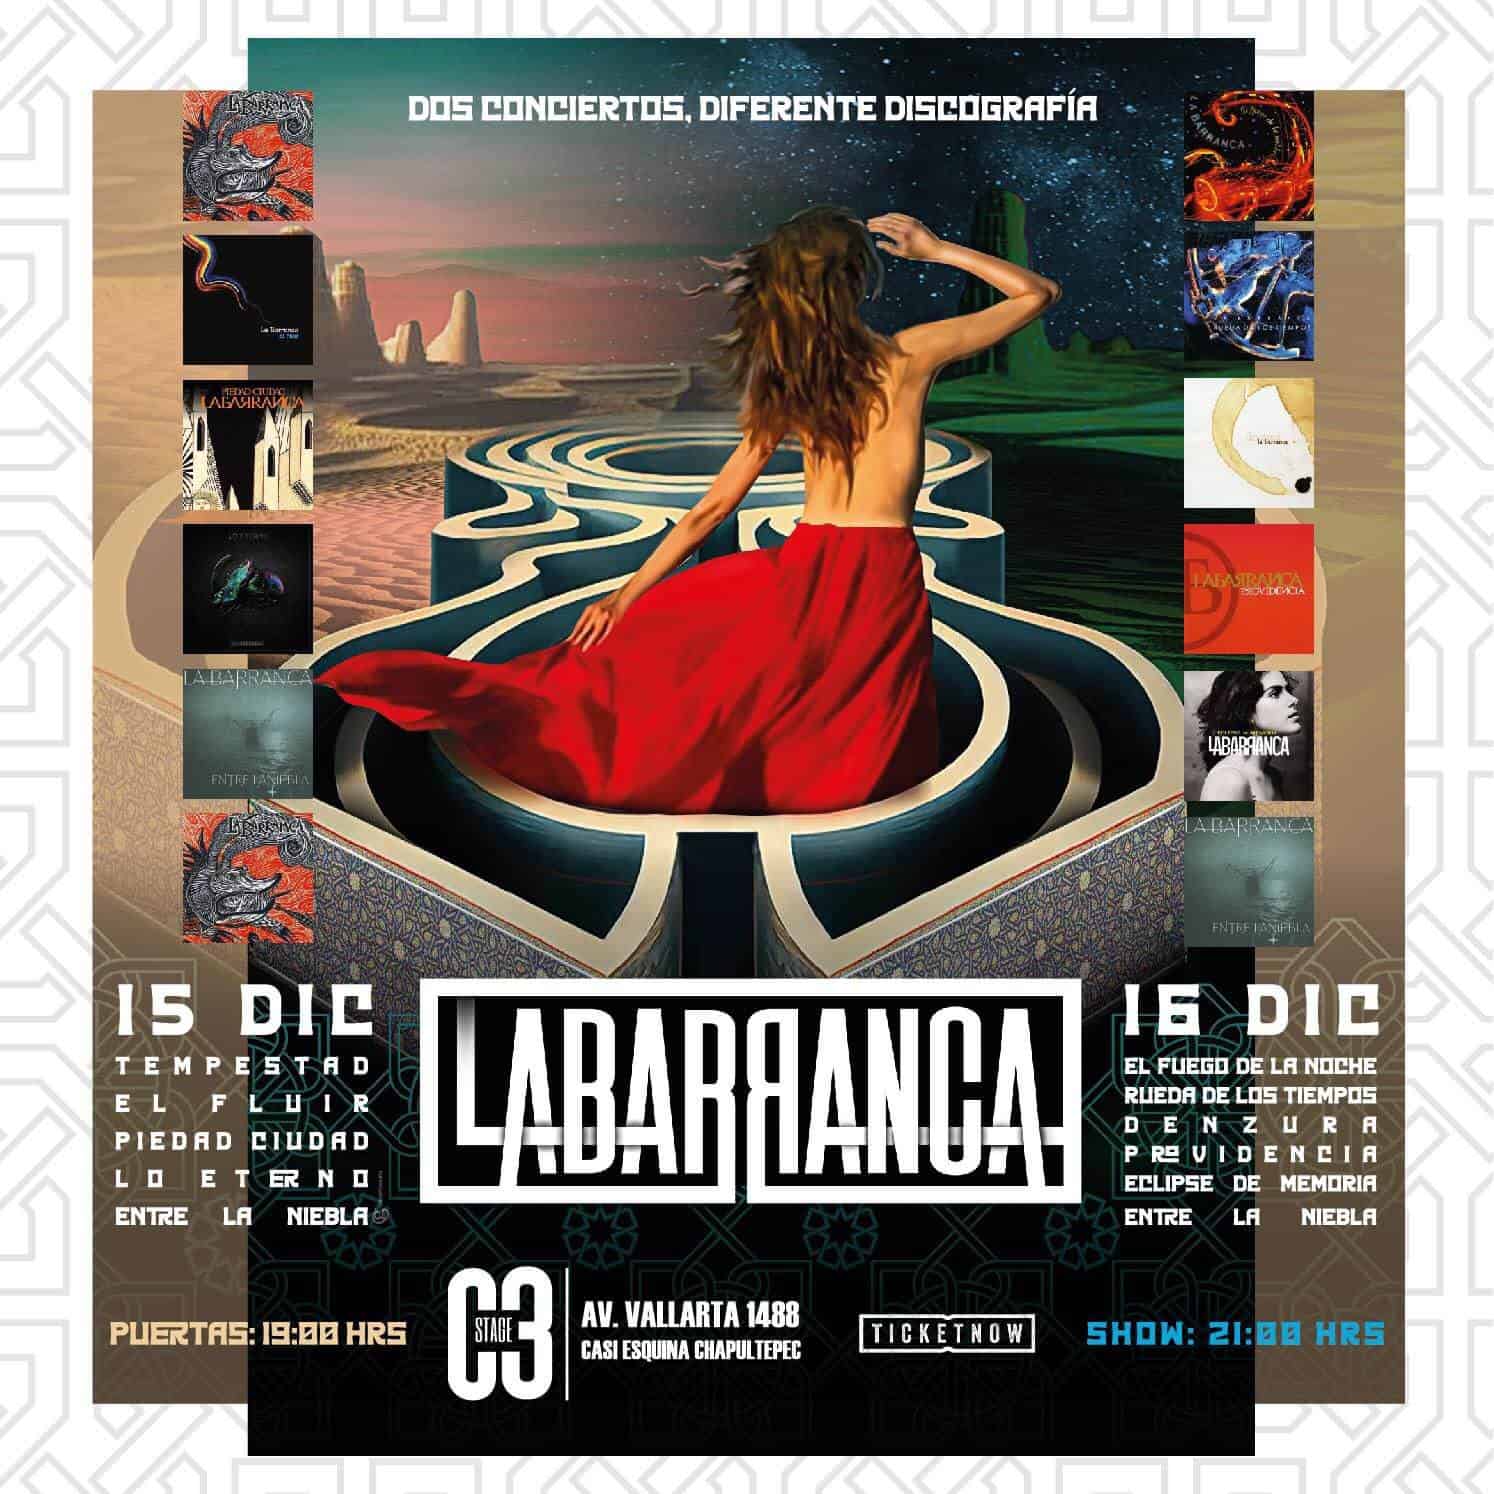 La Barranca dará dos conciertos este fin de semana en el C3 Stage